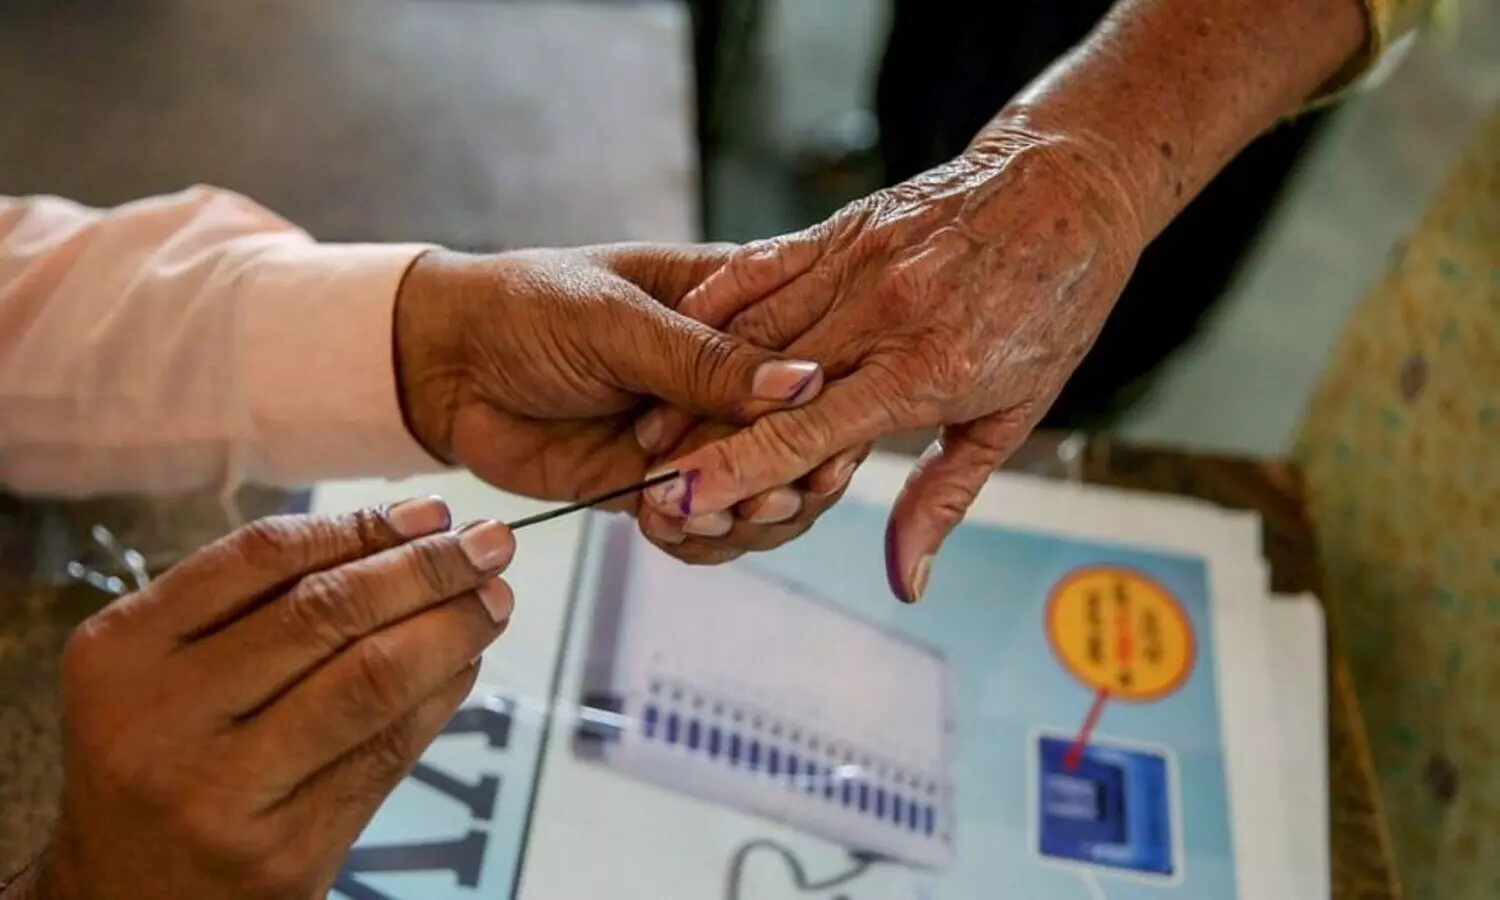 Goa Election 2022: मतदान के लिए दिये जा रहे तरह तरह के ऑफर, बंजी जंपिंग से लेकर फूड पर मिलेंगे छूट